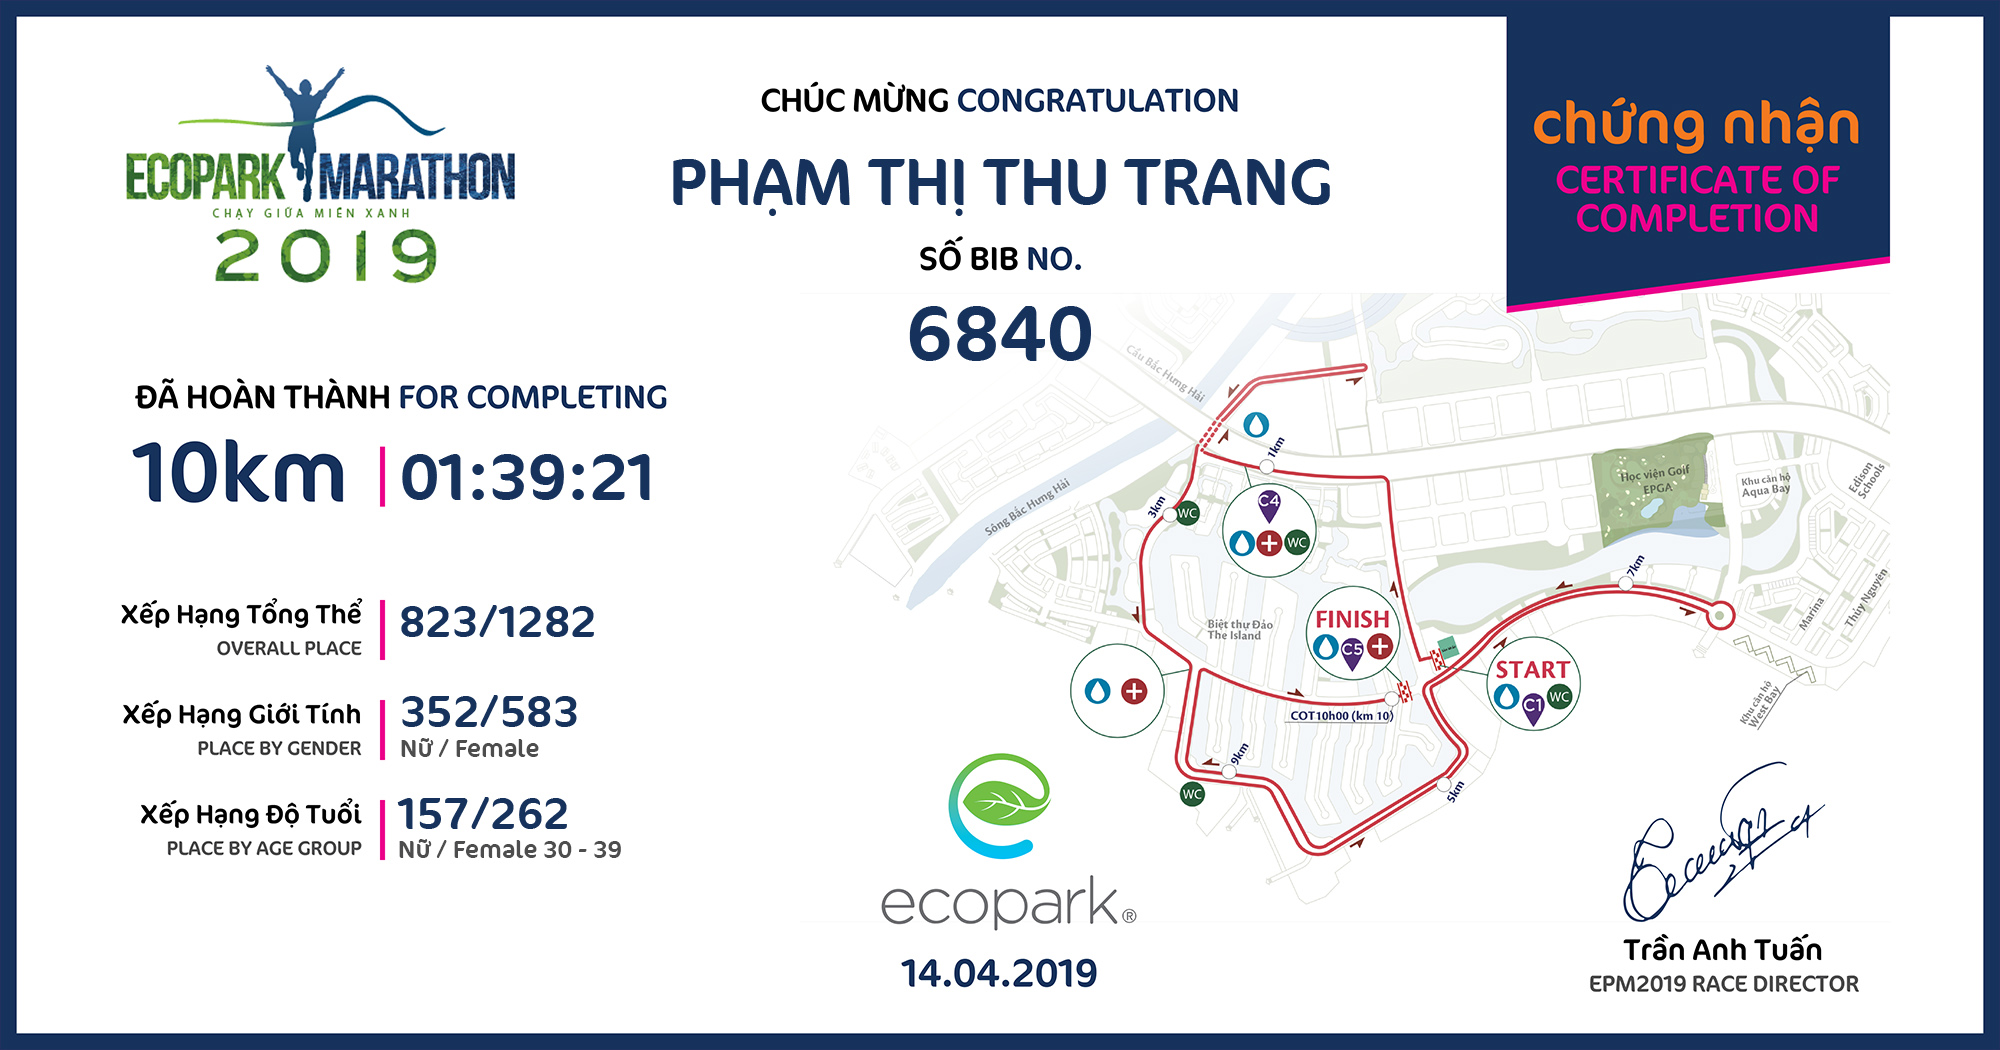 6840 - Phạm Thị Thu Trang